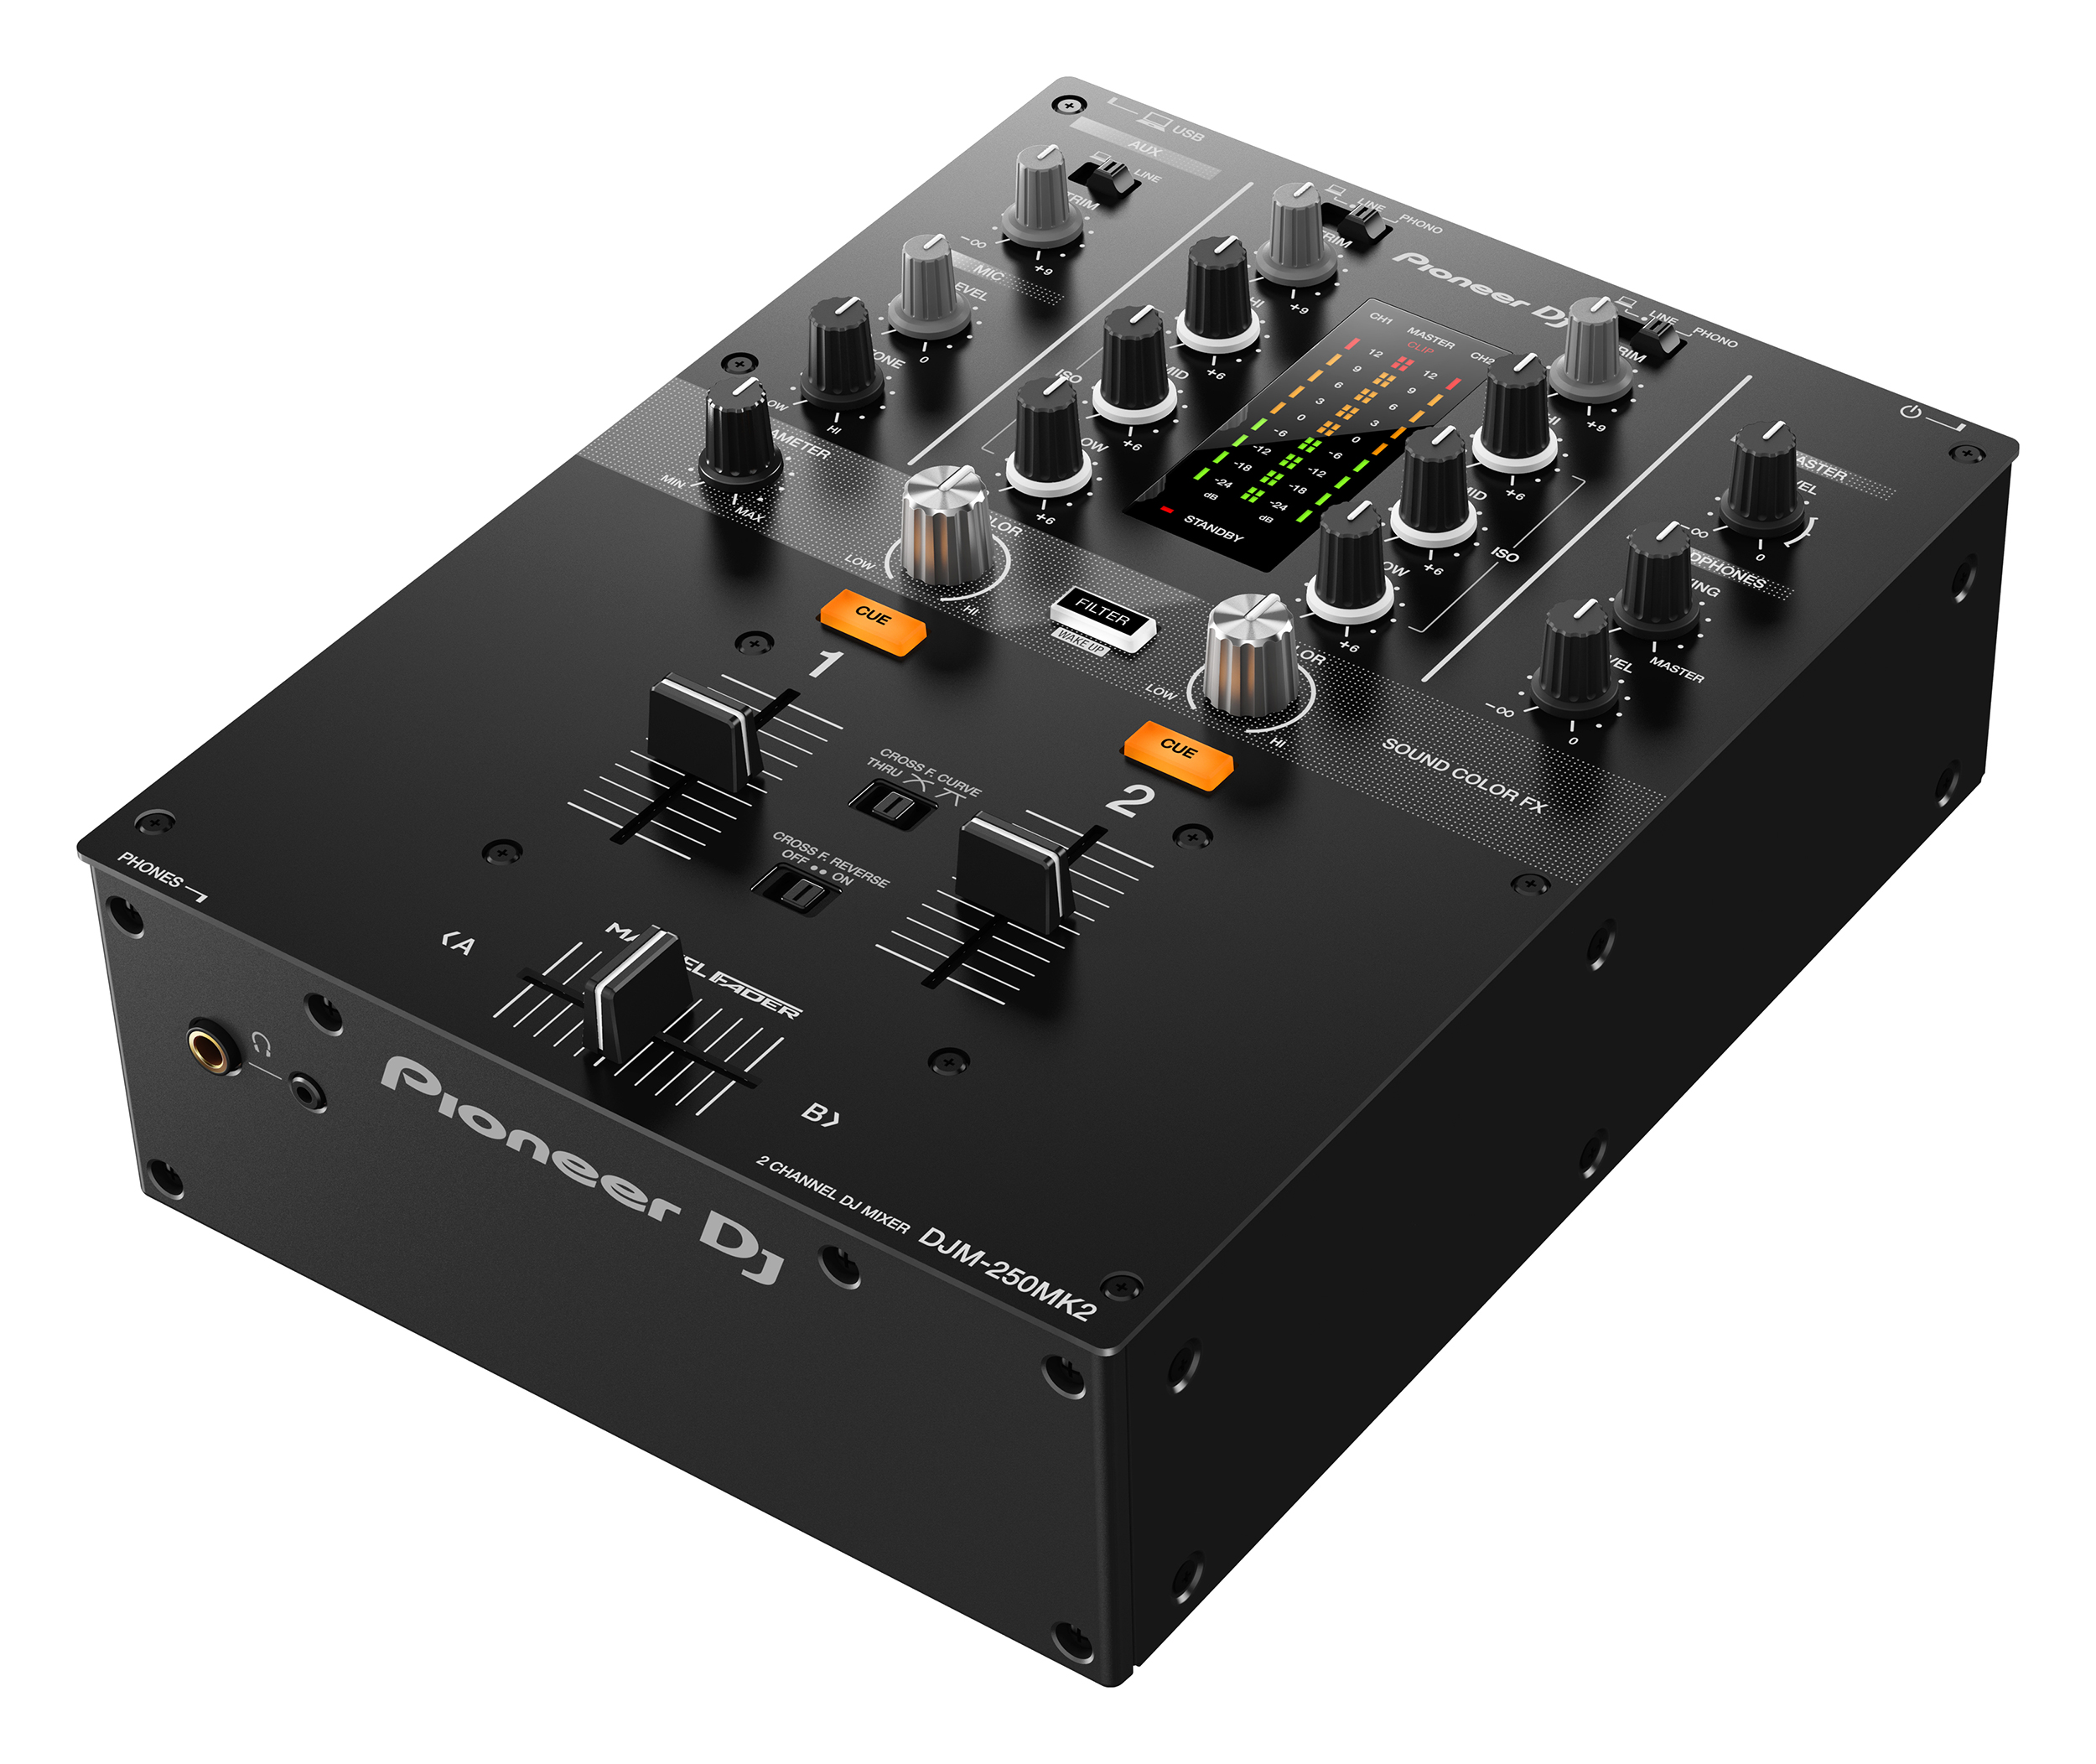 Nuevo mixer Pioneer DJM-250MK2